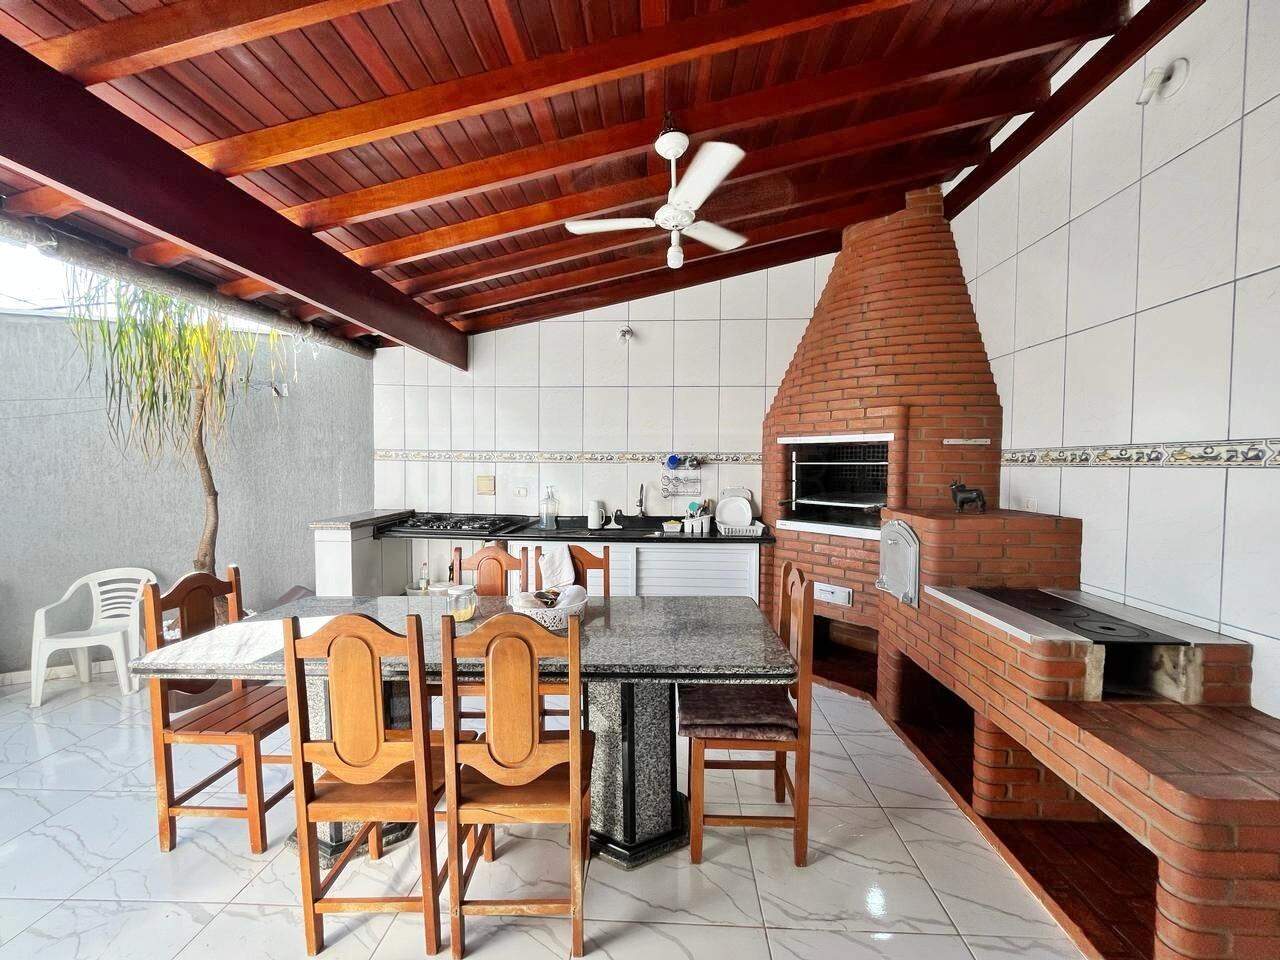 Casa à venda, 3 quartos, sendo 1 suíte, 2 vagas, no bairro Jardim São Luiz em Piracicaba - SP